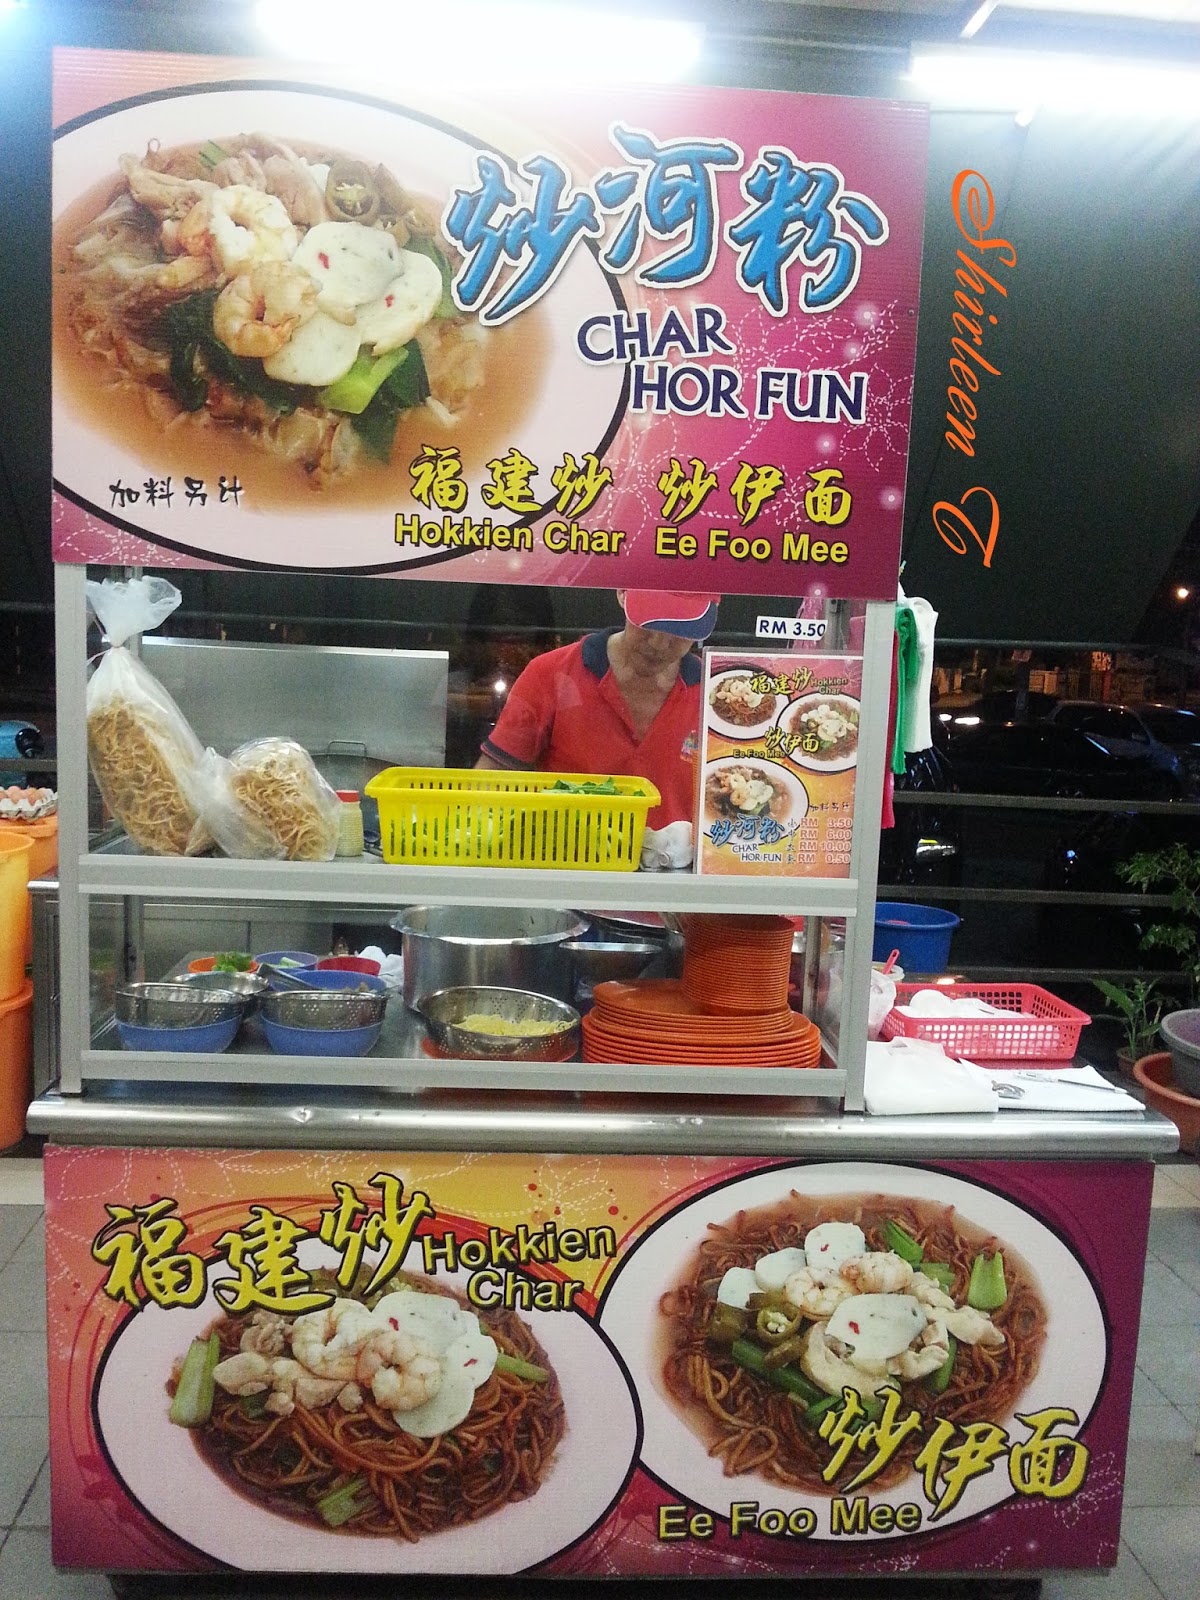 Kafe Telok Bayan 金湾饮食中心 @ Sungai Dua, Penang